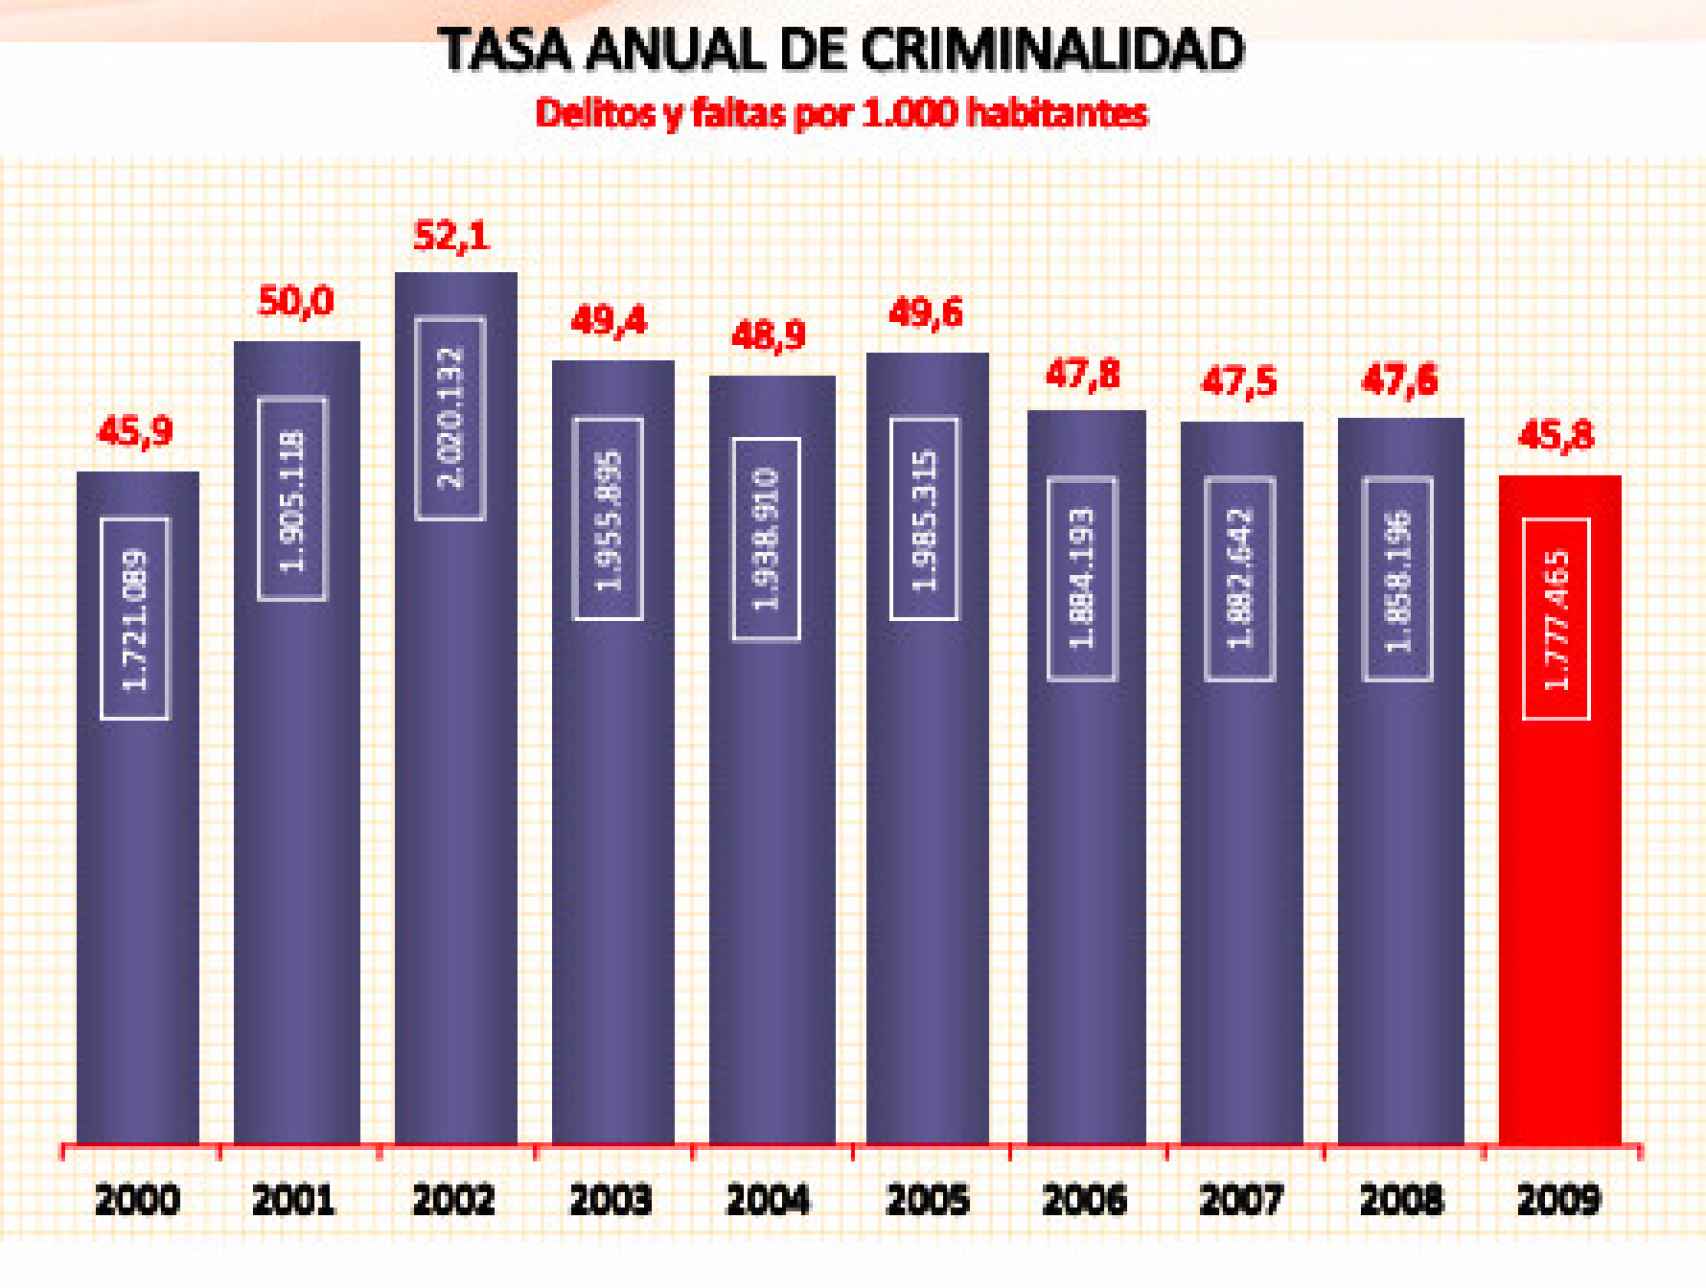 Tasa anual de criminalidad entre el año 2000 y el 2009